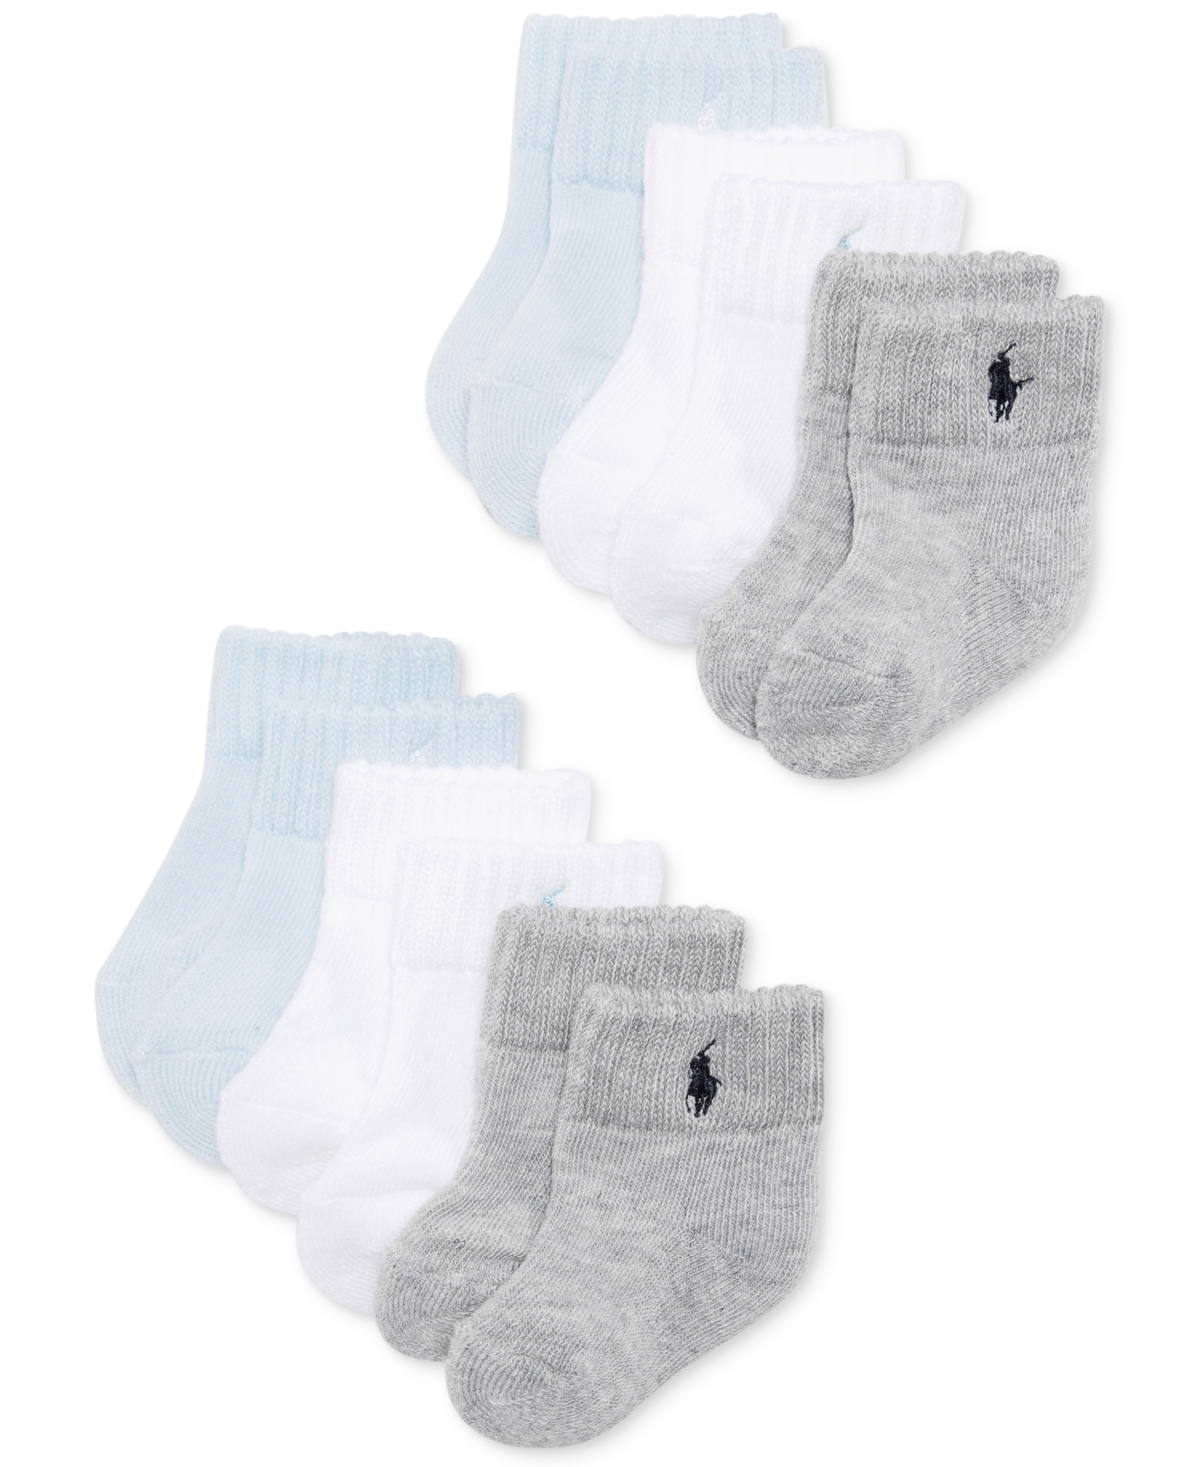 Polo Ralph Lauren Ralph Lauren Baby Boys Quarter Length Low Cut Socks, Pack Of 6 In Blue,white,grey